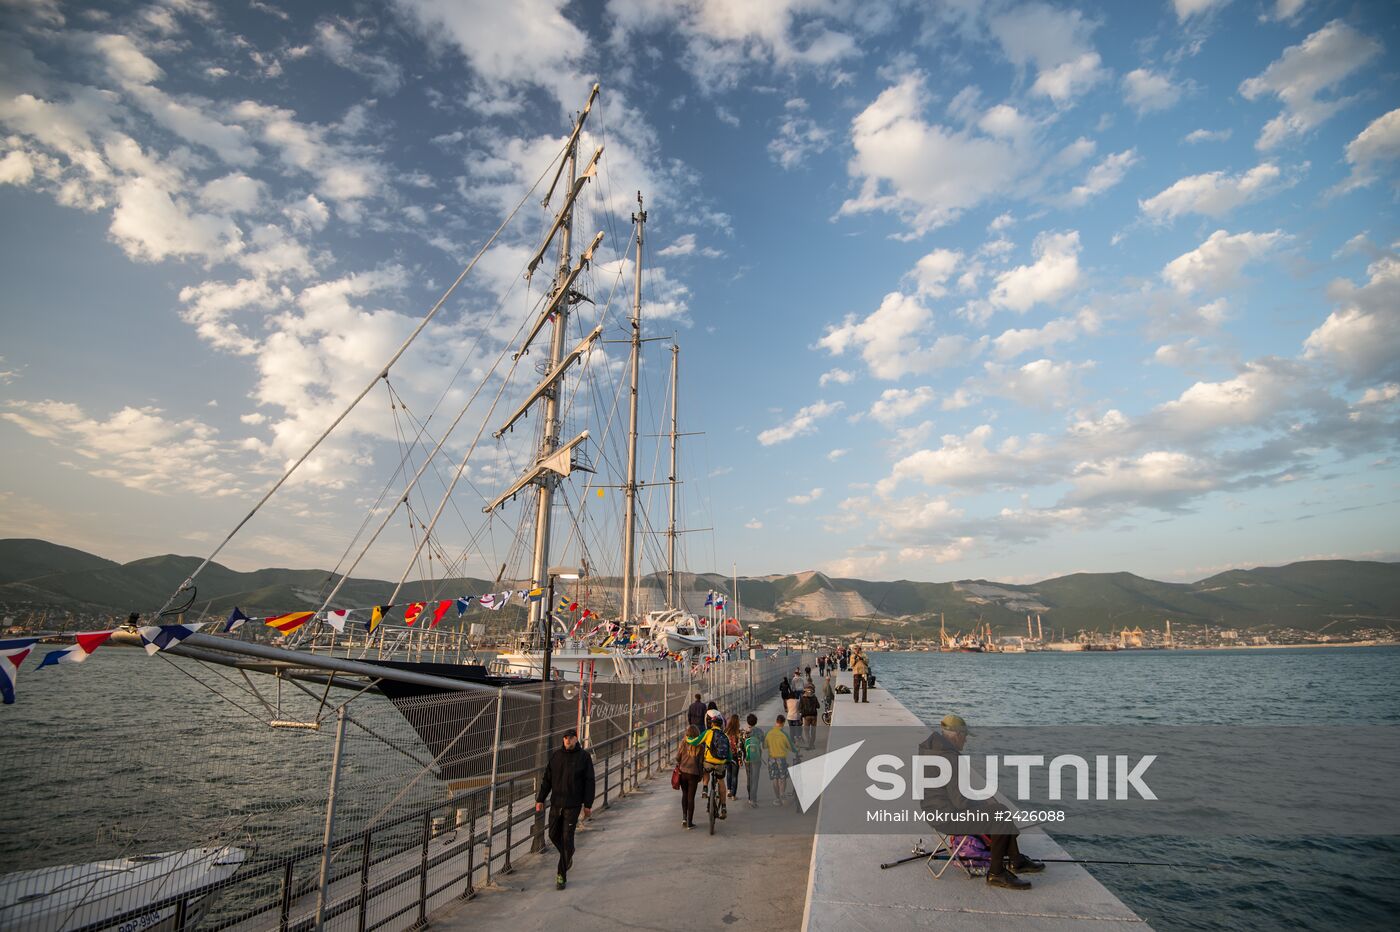 Black Sea tall ship regatta